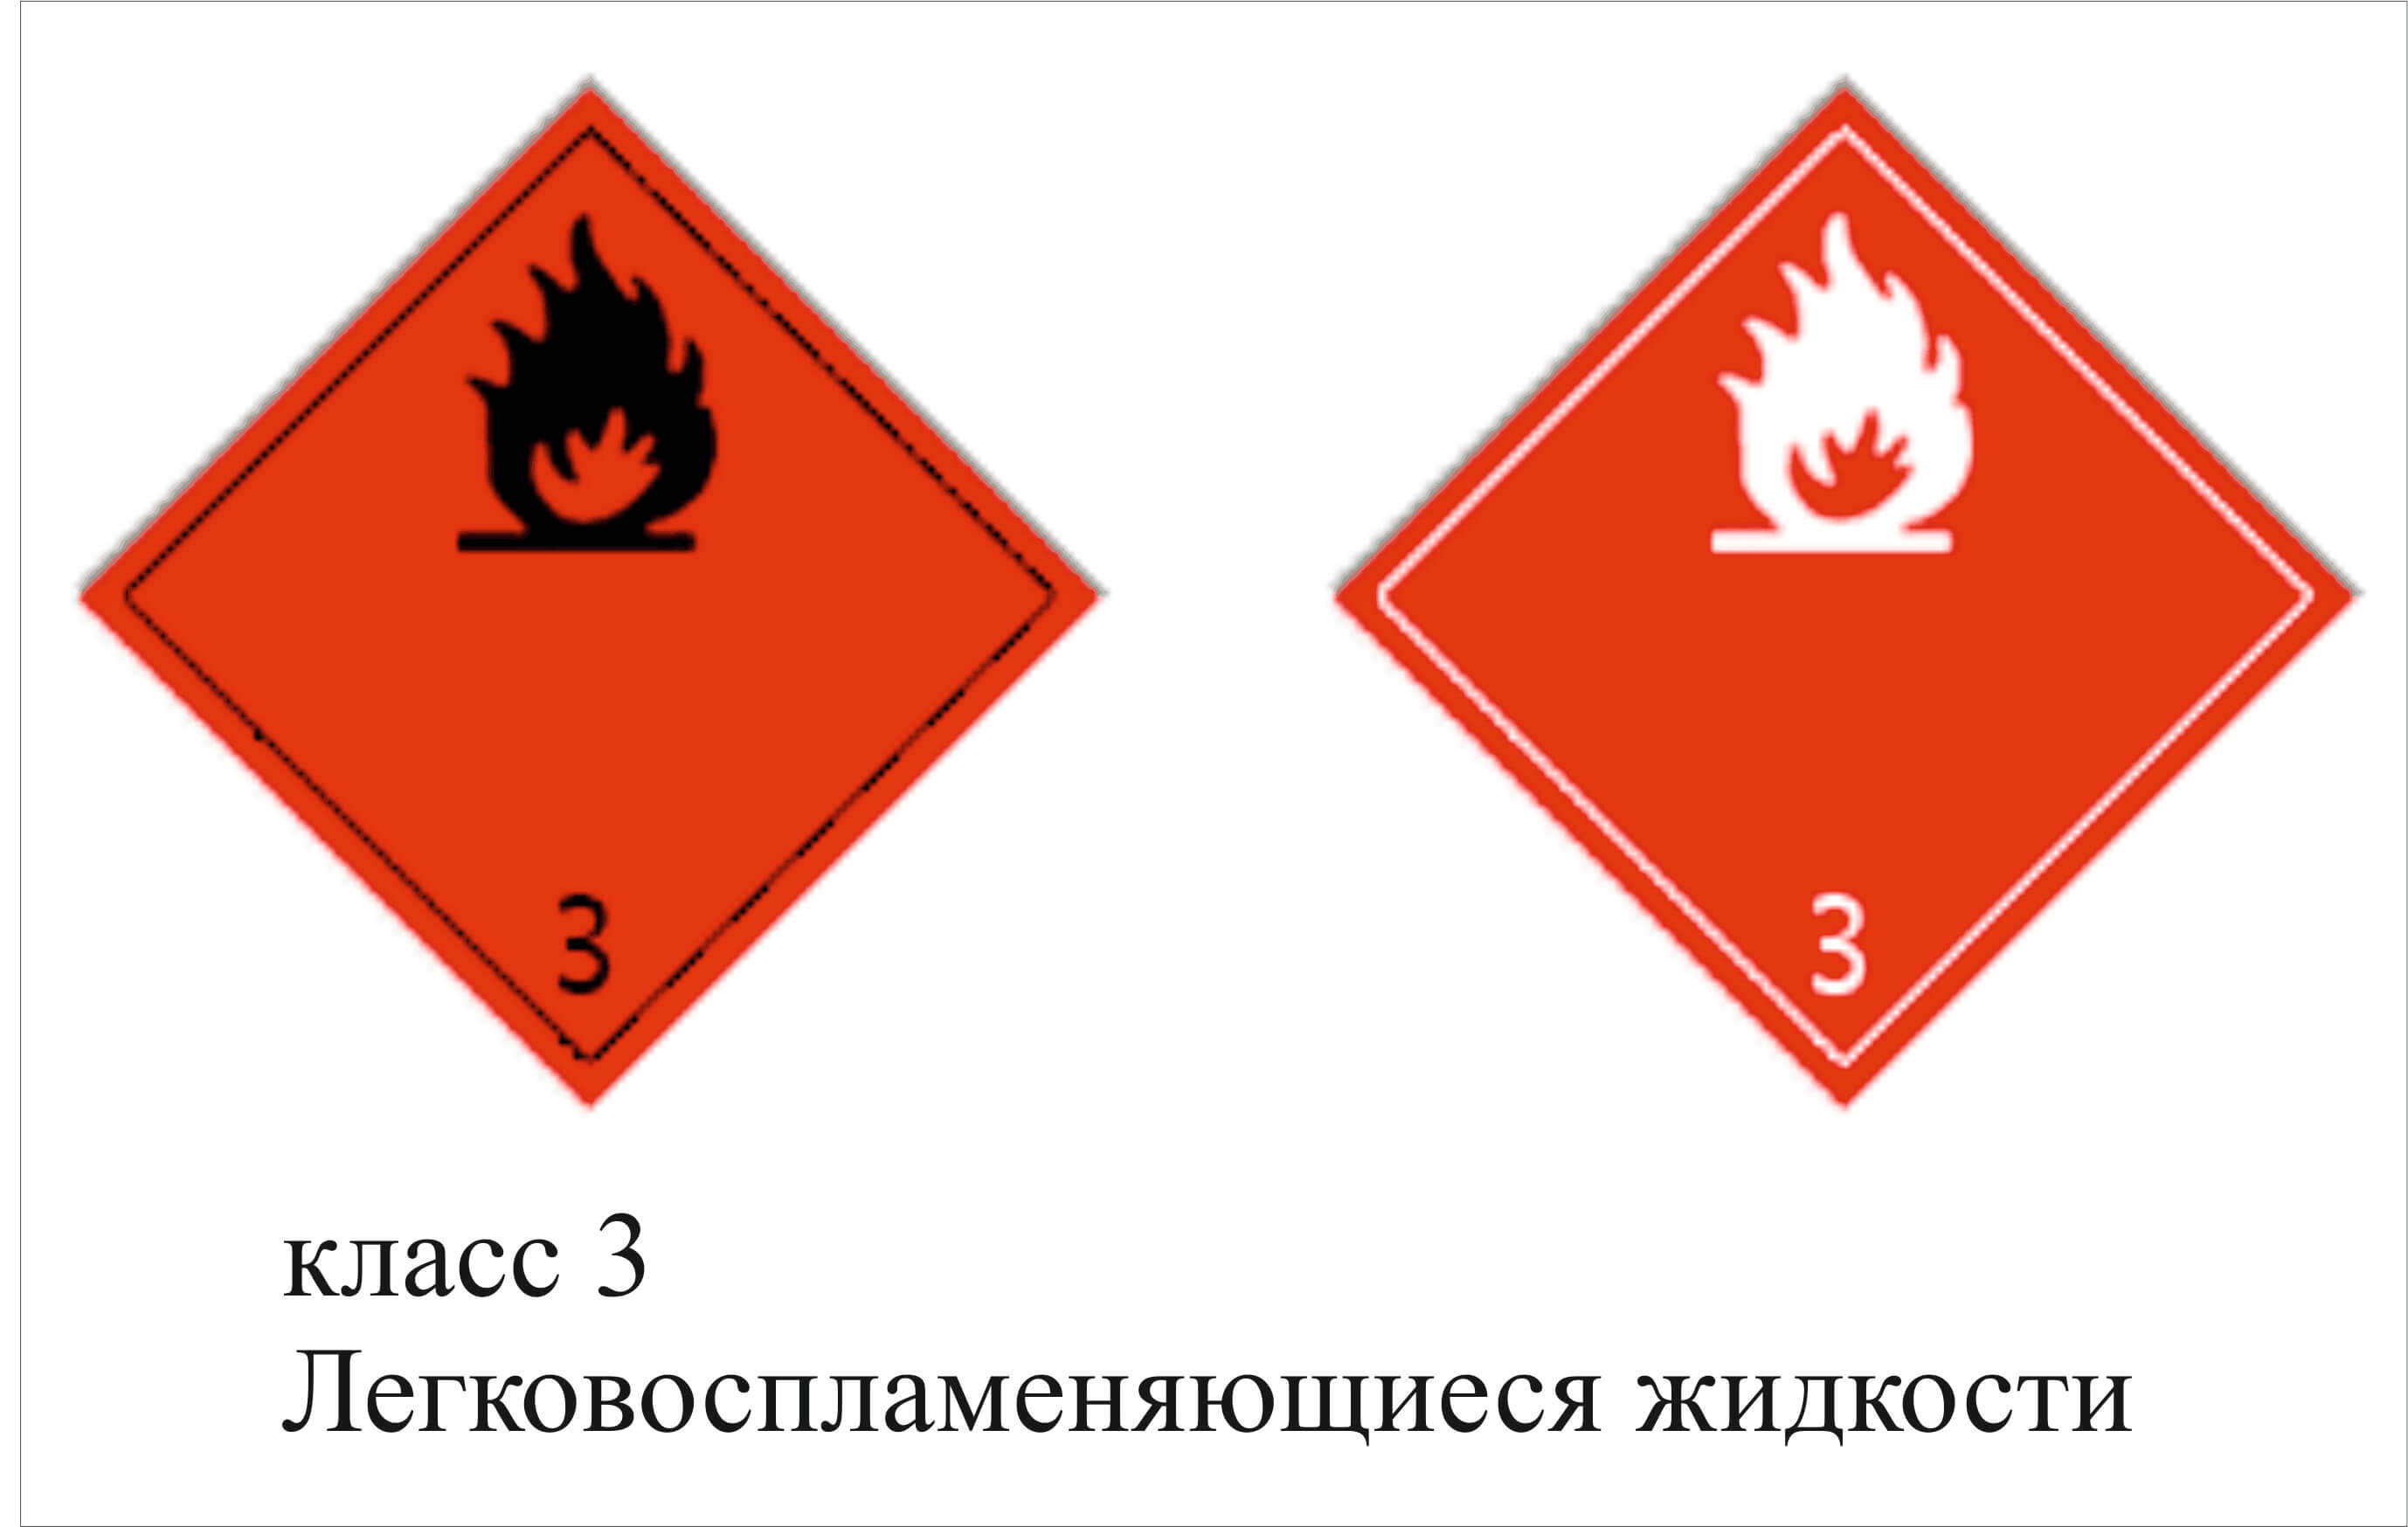 Опасность 3.3. Знак опасности класс 3 ЛВЖ. Легковоспламеняющиеся жидкости 3 класс опасности. Класс 3- легковоспламеняющиеся жидкости ( ЛВЖ);. Знак 3 класс опасности легковоспламеняющиеся жидкости.